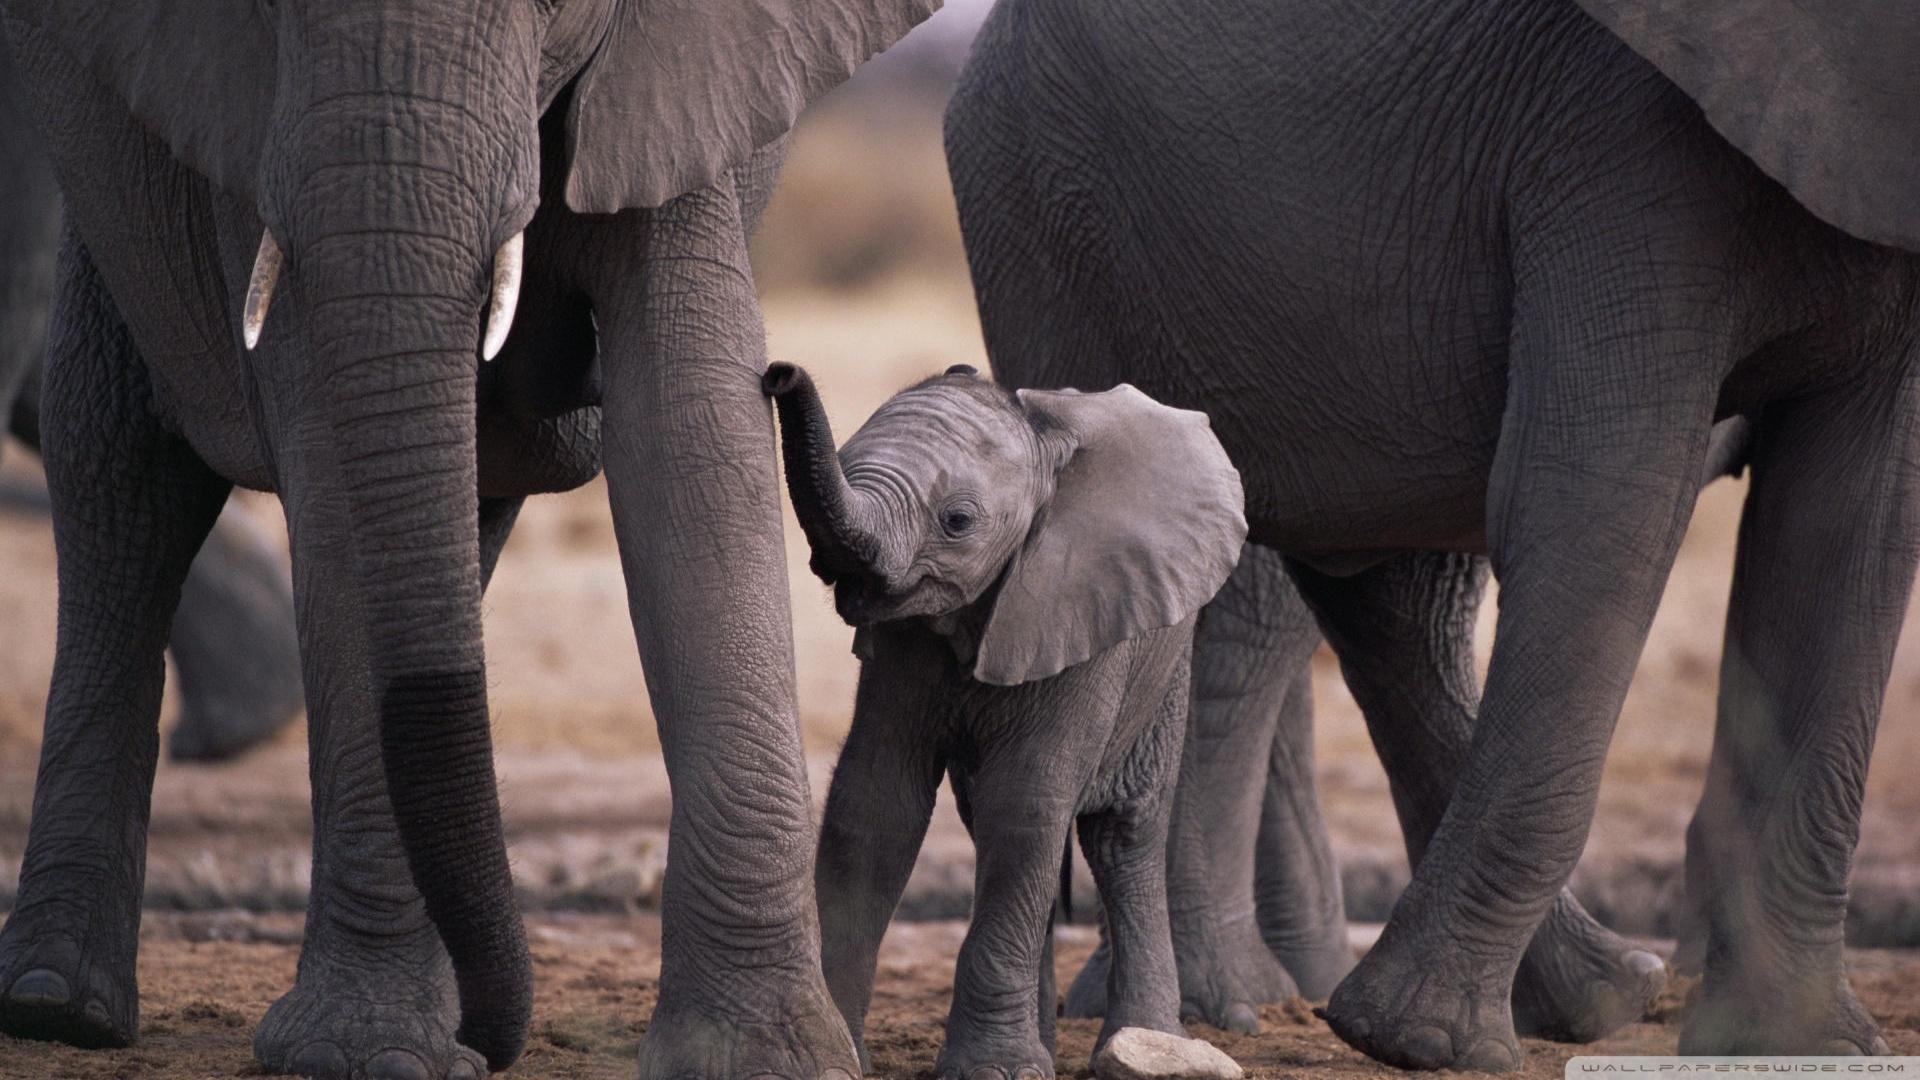 Cute Baby Elephant ❤ 4K HD Desktop Wallpaper for 4K Ultra HD TV